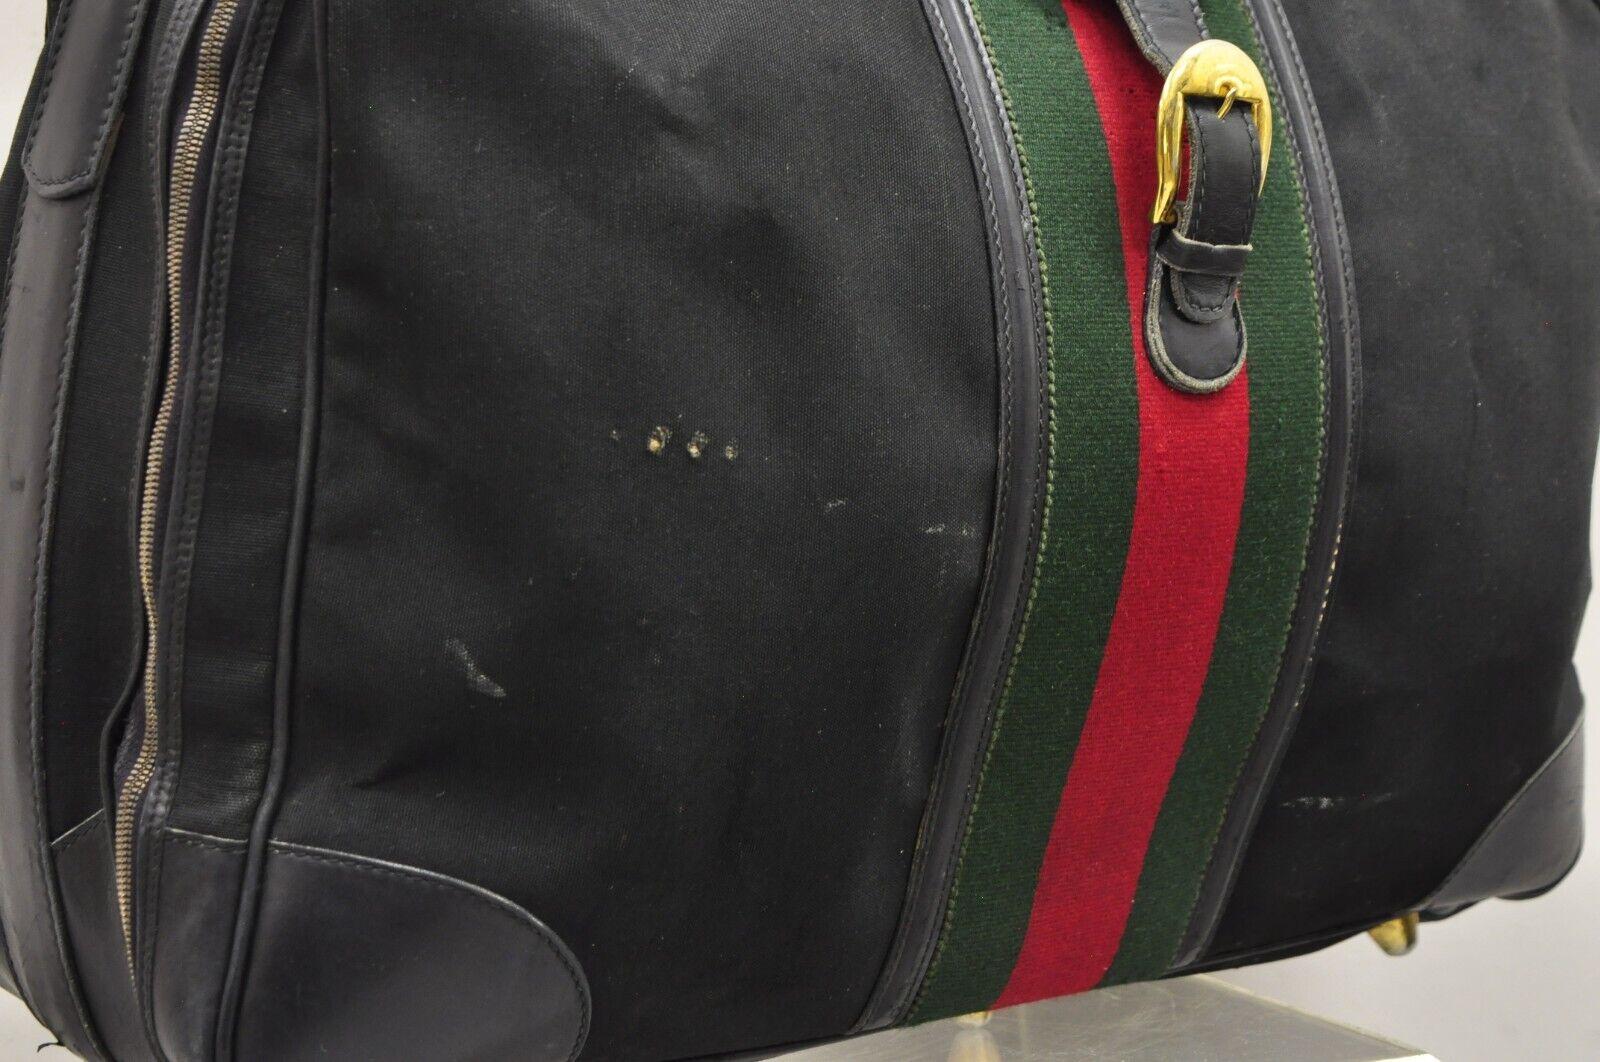 Vintage Gucci Black Canvas & Leather Suitcase Luggage Travel Bag Set - 2 Pcs For Sale 1